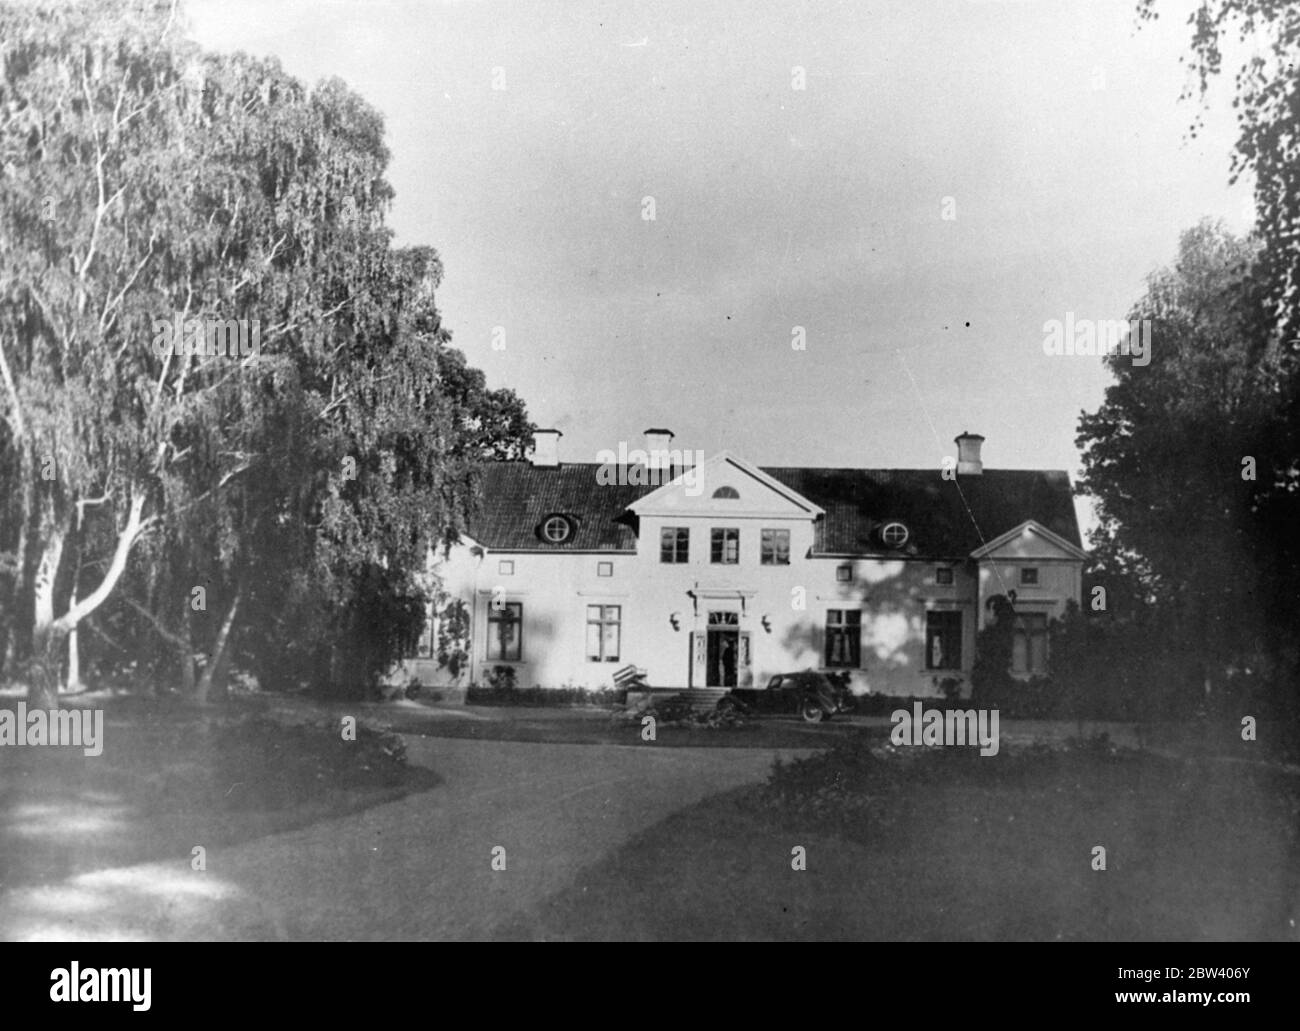 Wo Greta Garbo allein sein kann. Greta Garbo , schwedische Filmschauspielerin, hat ein Anwesen in Harby gekauft, etwa 40 Meilen von Stockholm. Das Anwesen, stammt aus dem 16. Jahrhundert, besteht aus einem 10 Zimmer Bauernhaus (das modernisiert wurde) neben einem See und umgeben von einem Park aus alten Eichen. Der Kauf erfolgte im Namen von Miss Garbo durch ihren Bruder Herrn Gustavsson. Der Preis ist angegeben, um 276000 Kronen, etwa Â£14000. Es wird allgemein angenommen, dass der Ort für Greta Garbo als ein Haus gekauft wurde, wo sie während ihres Besuchs in ihrem Heimatcou frei von Werbung bleiben kann Stockfoto